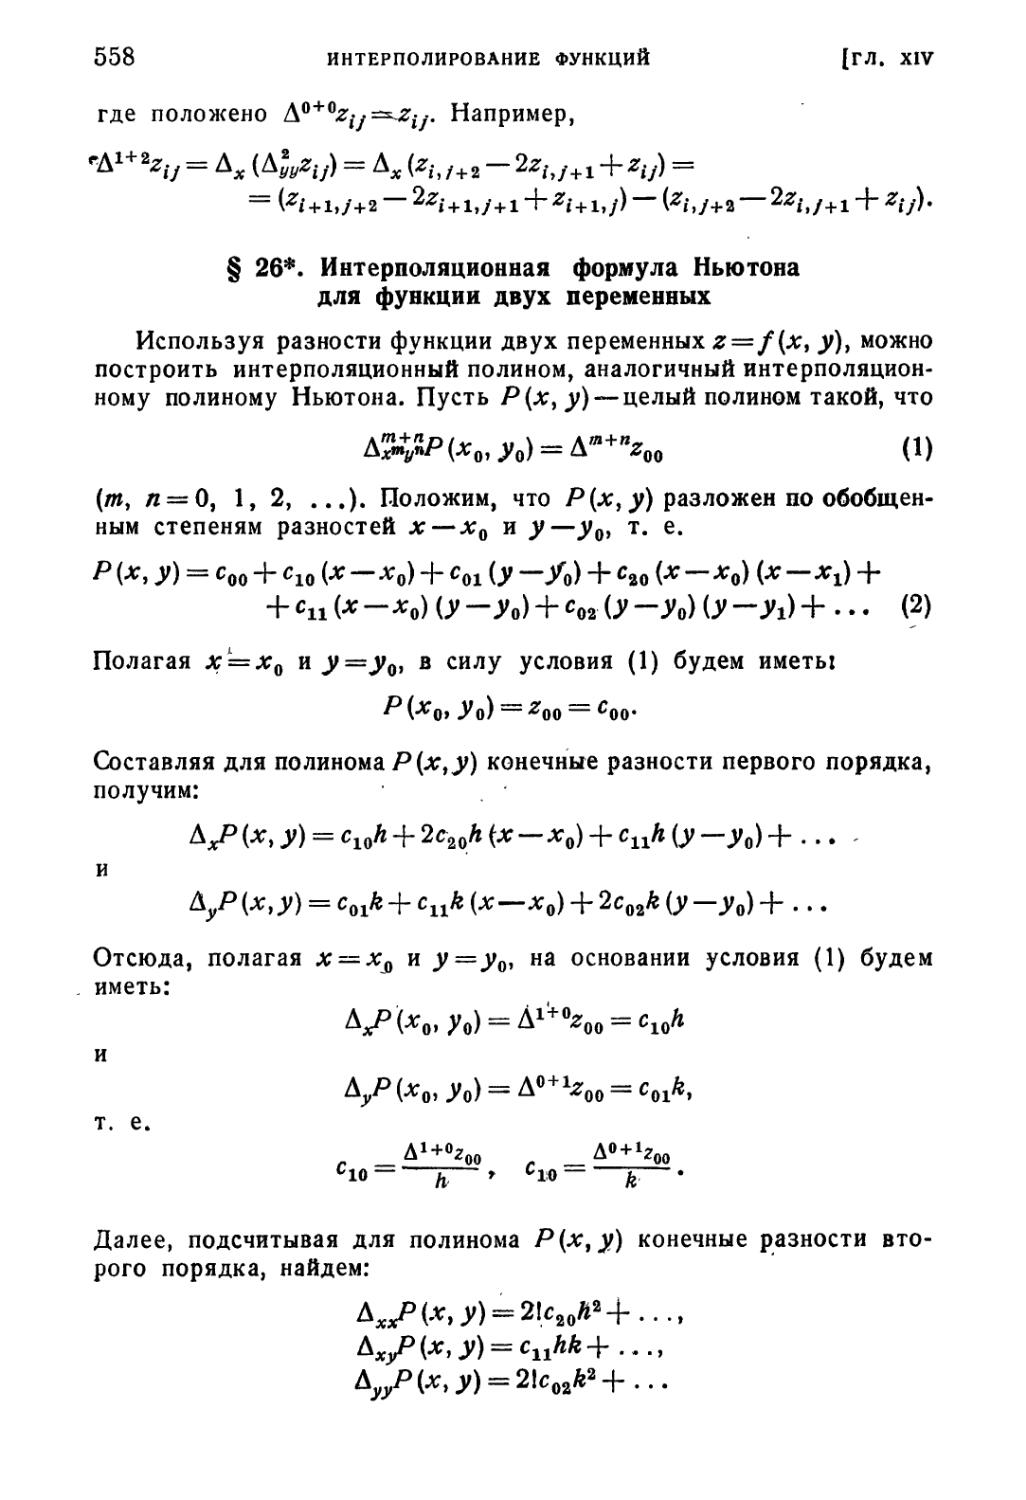 § 26*. Интерполяционная формула Ньютона для функции двух переменных